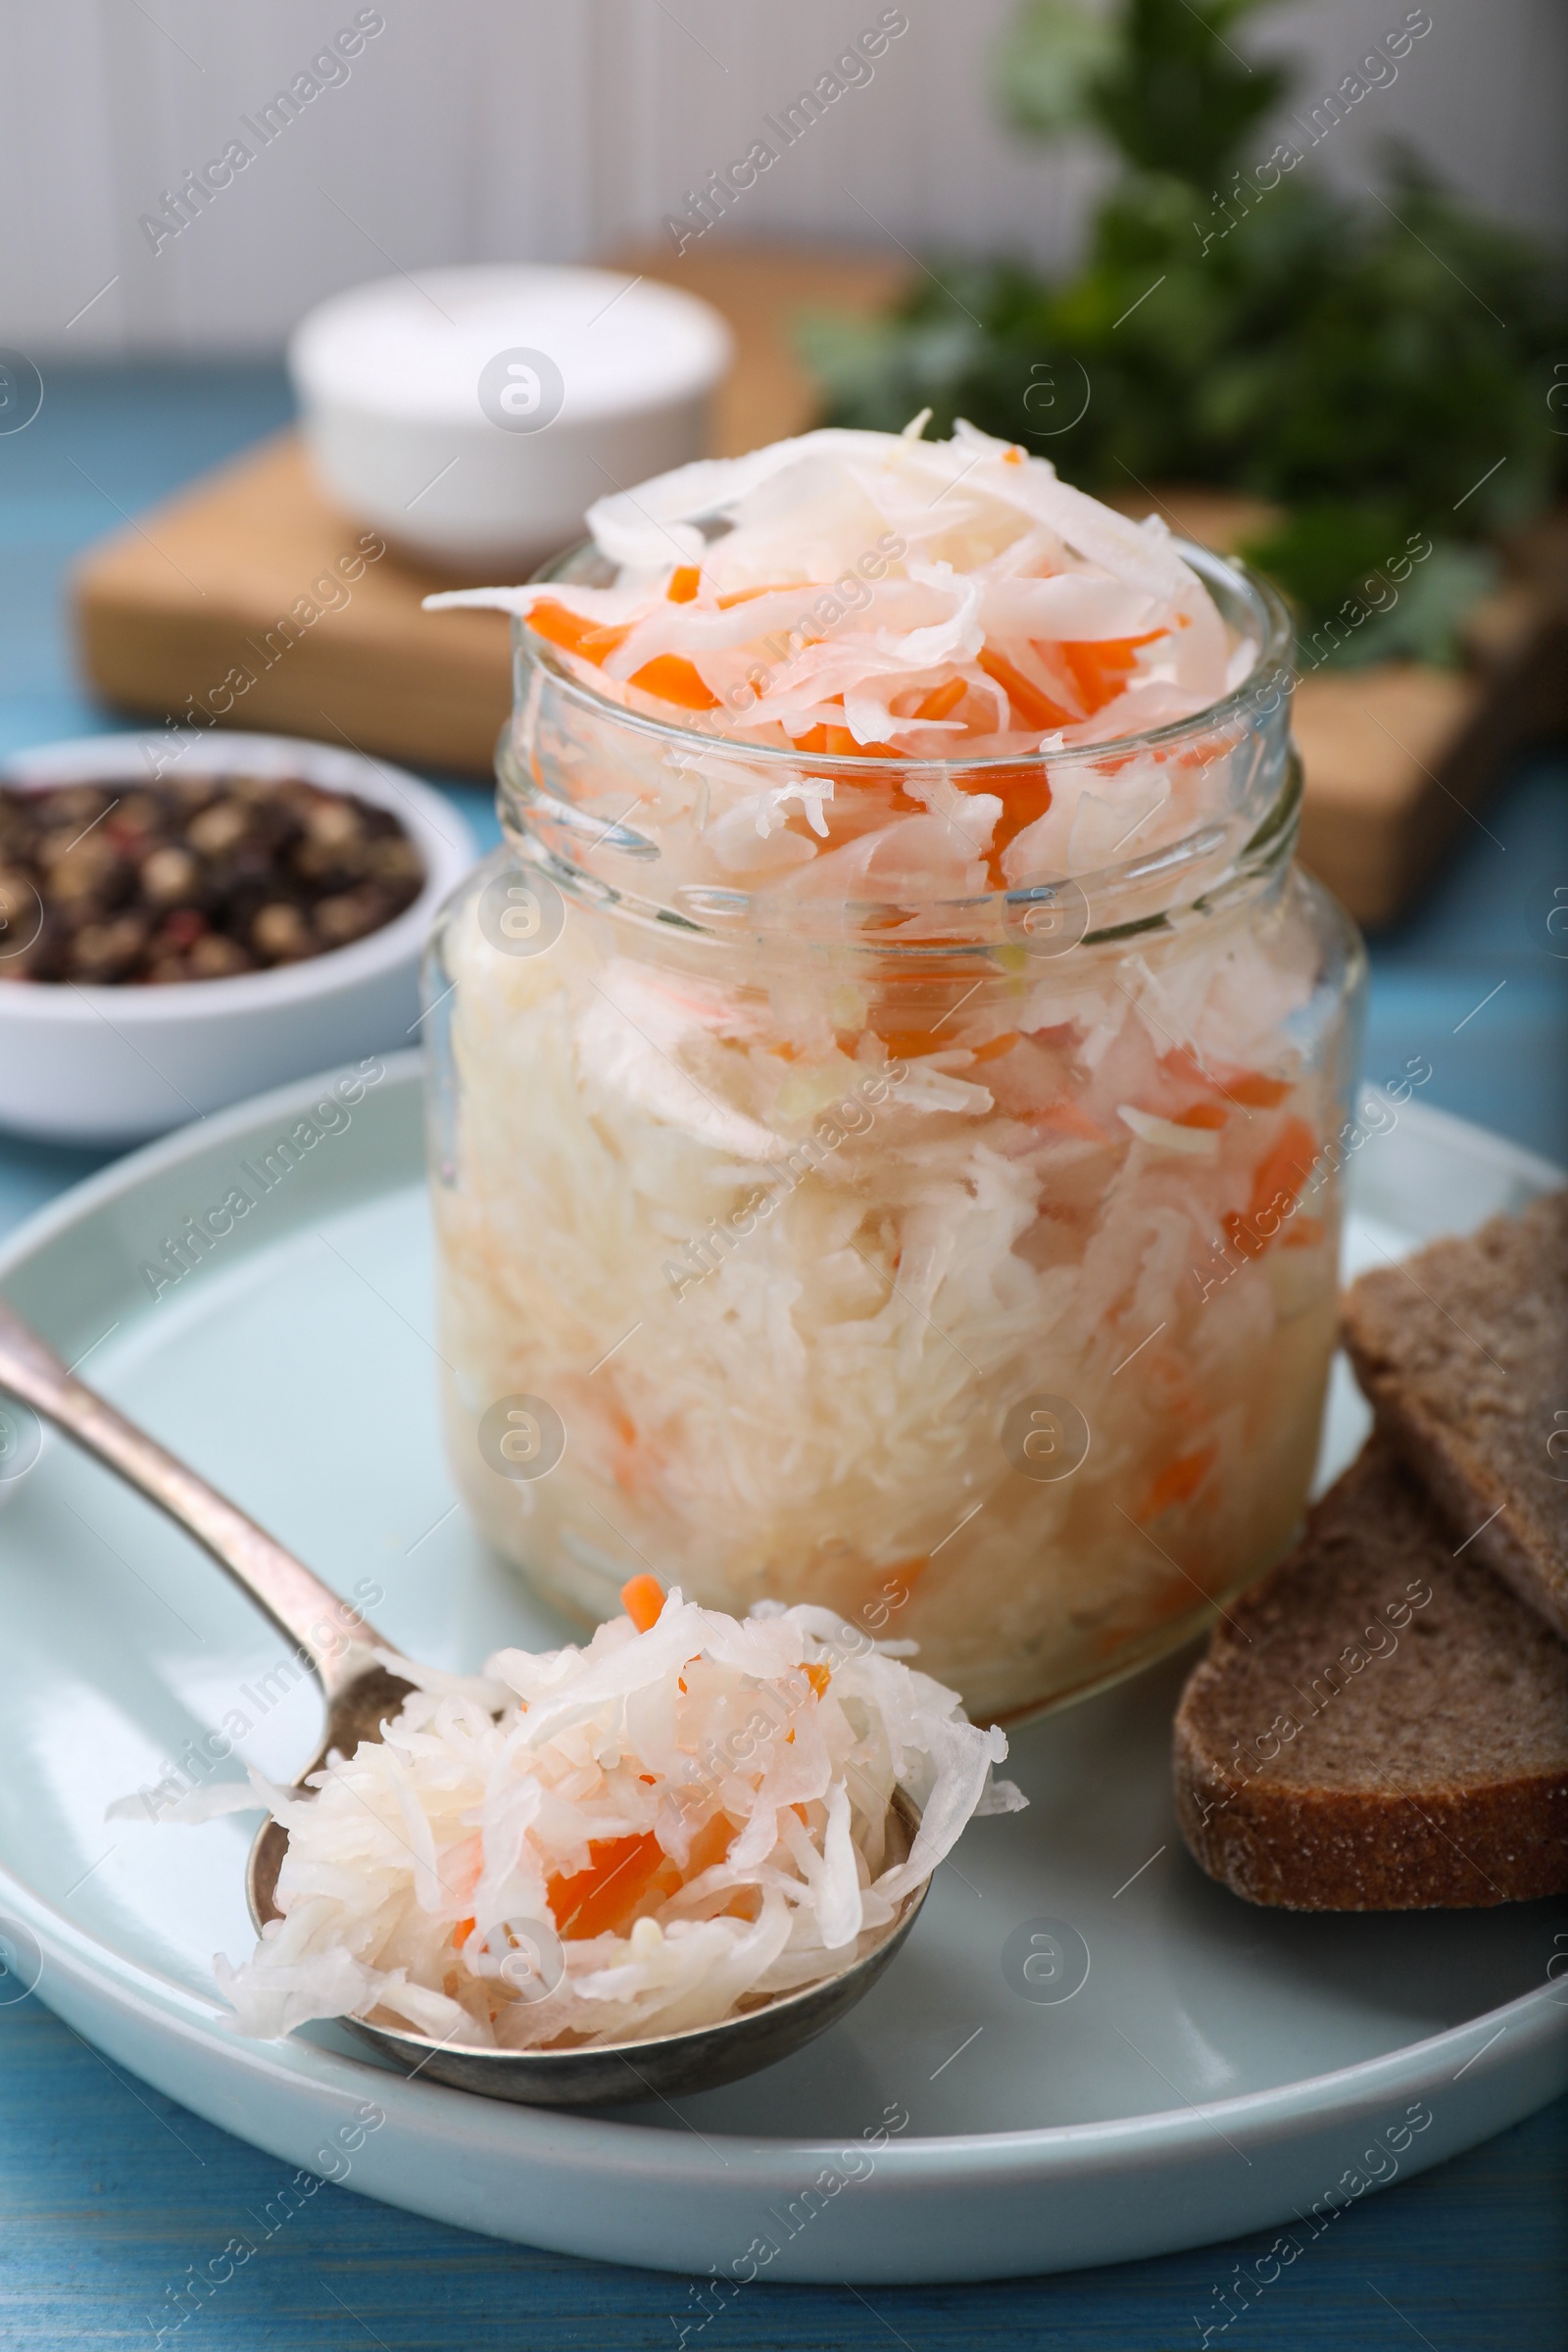 Photo of Tasty sauerkraut in jar on table, closeup